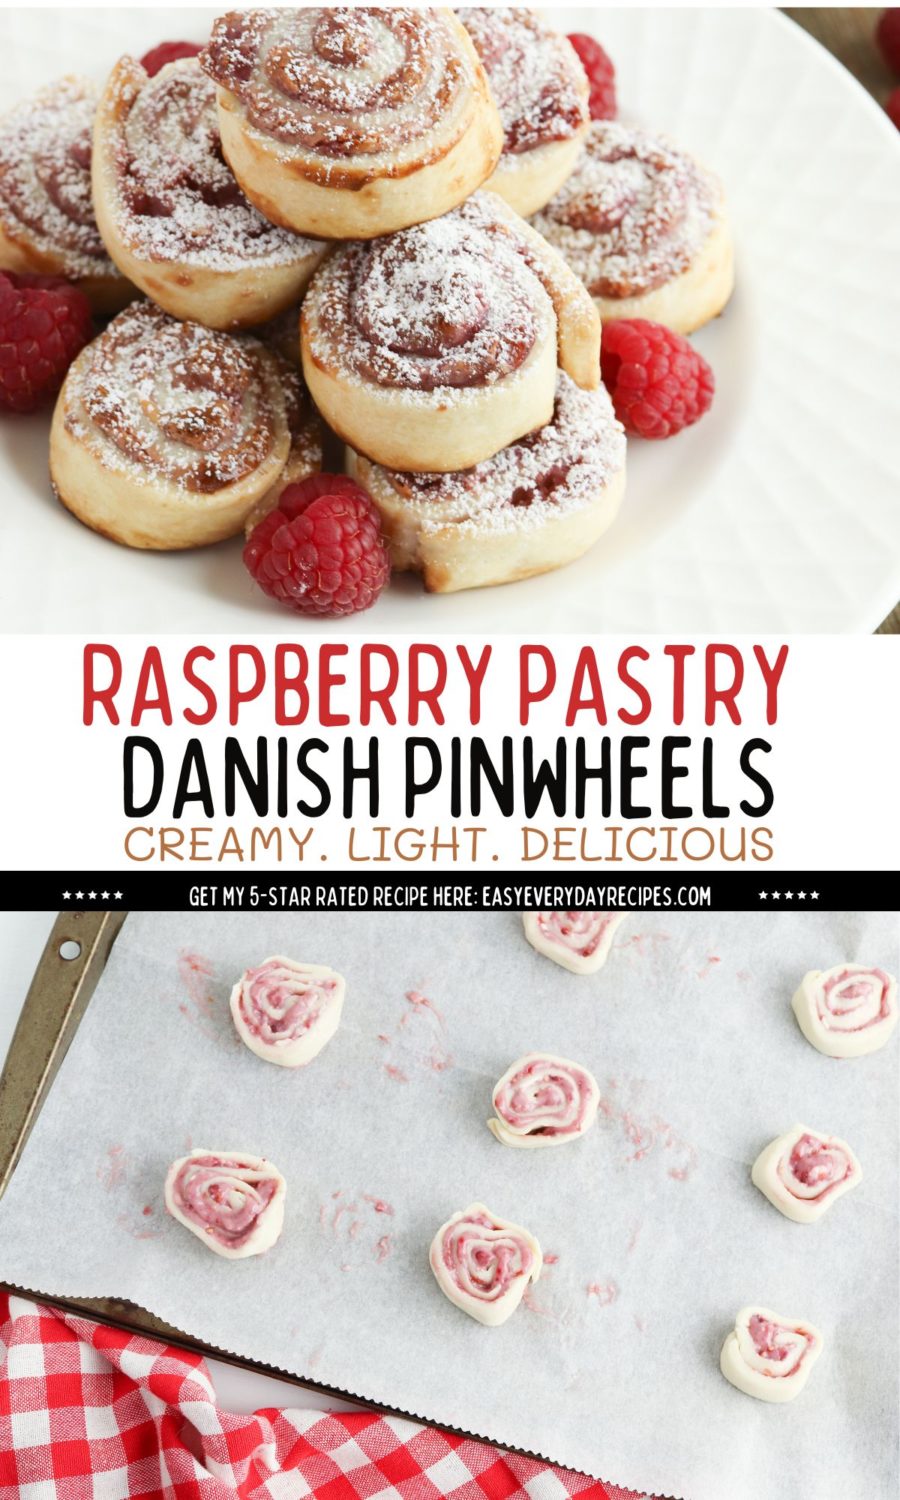 Raspberry pastry danish pinwheels.